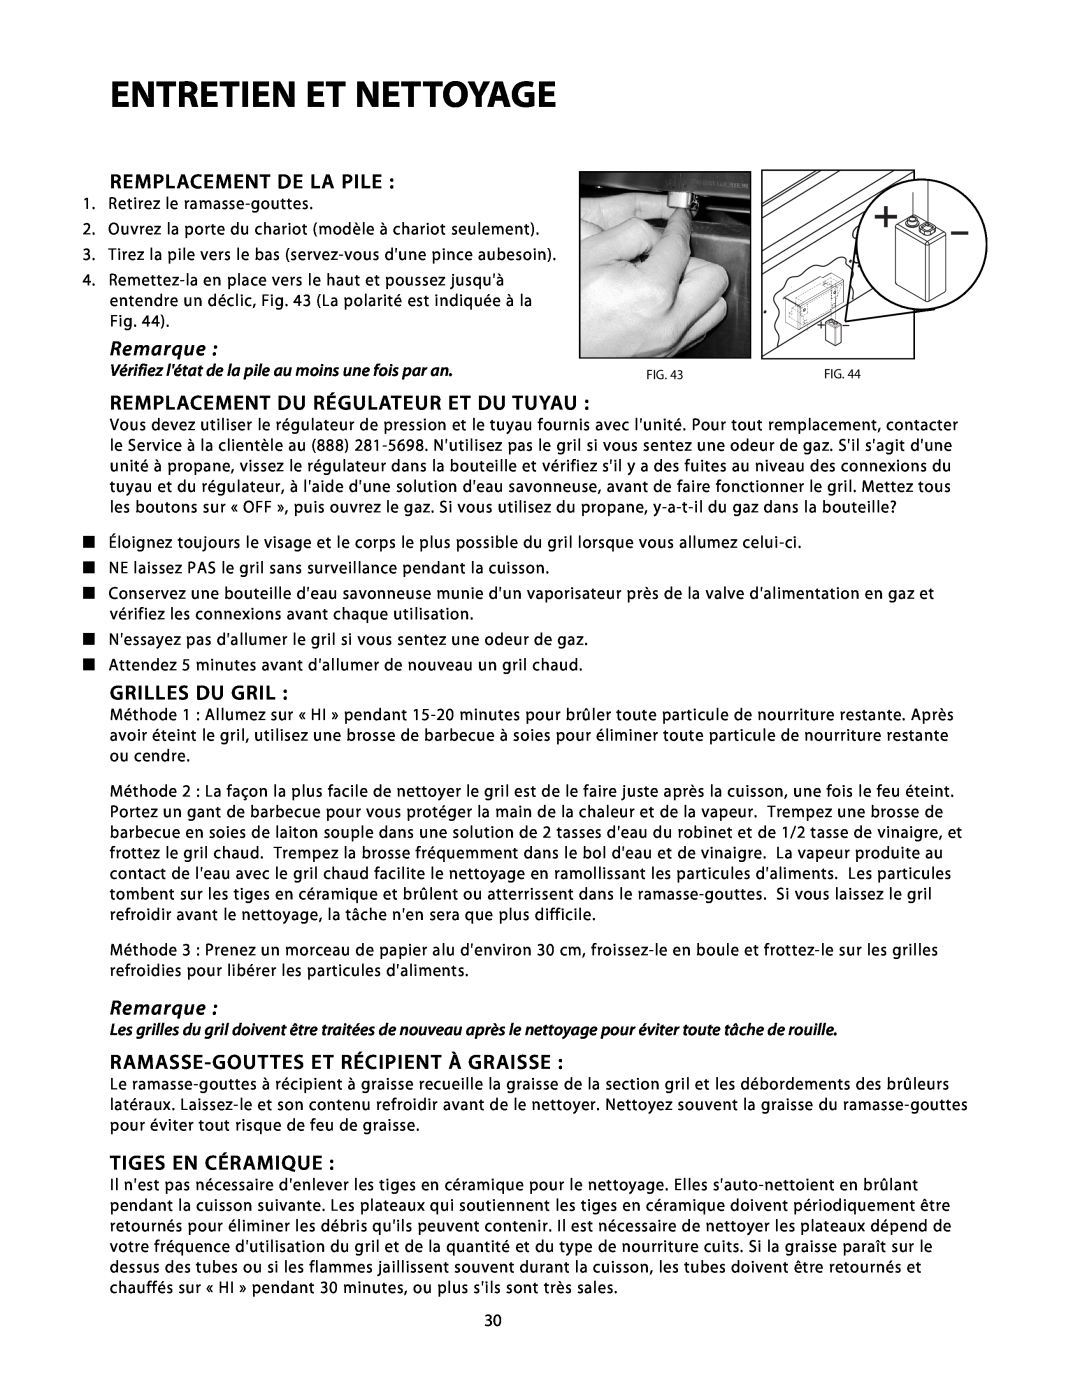 DCS BGB48-BQAR Entretien Et Nettoyage, Remplacement De La Pile, Remplacement Du Régulateur Et Du Tuyau, Grilles Du Gril 